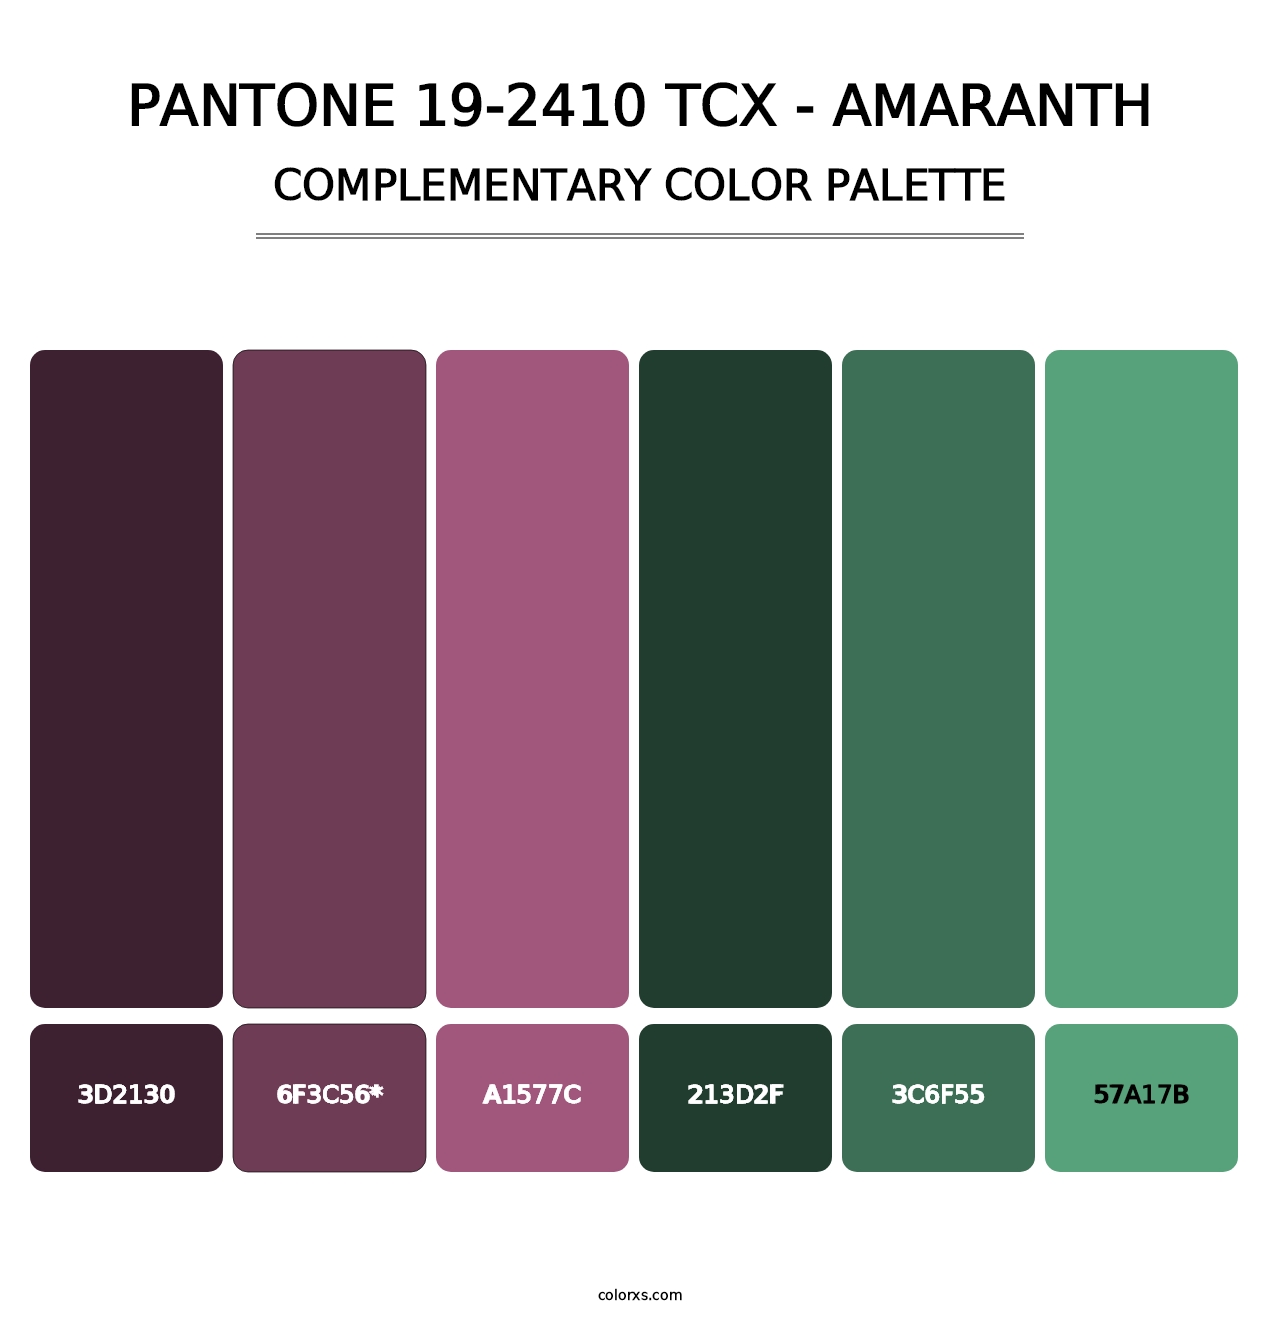 PANTONE 19-2410 TCX - Amaranth - Complementary Color Palette